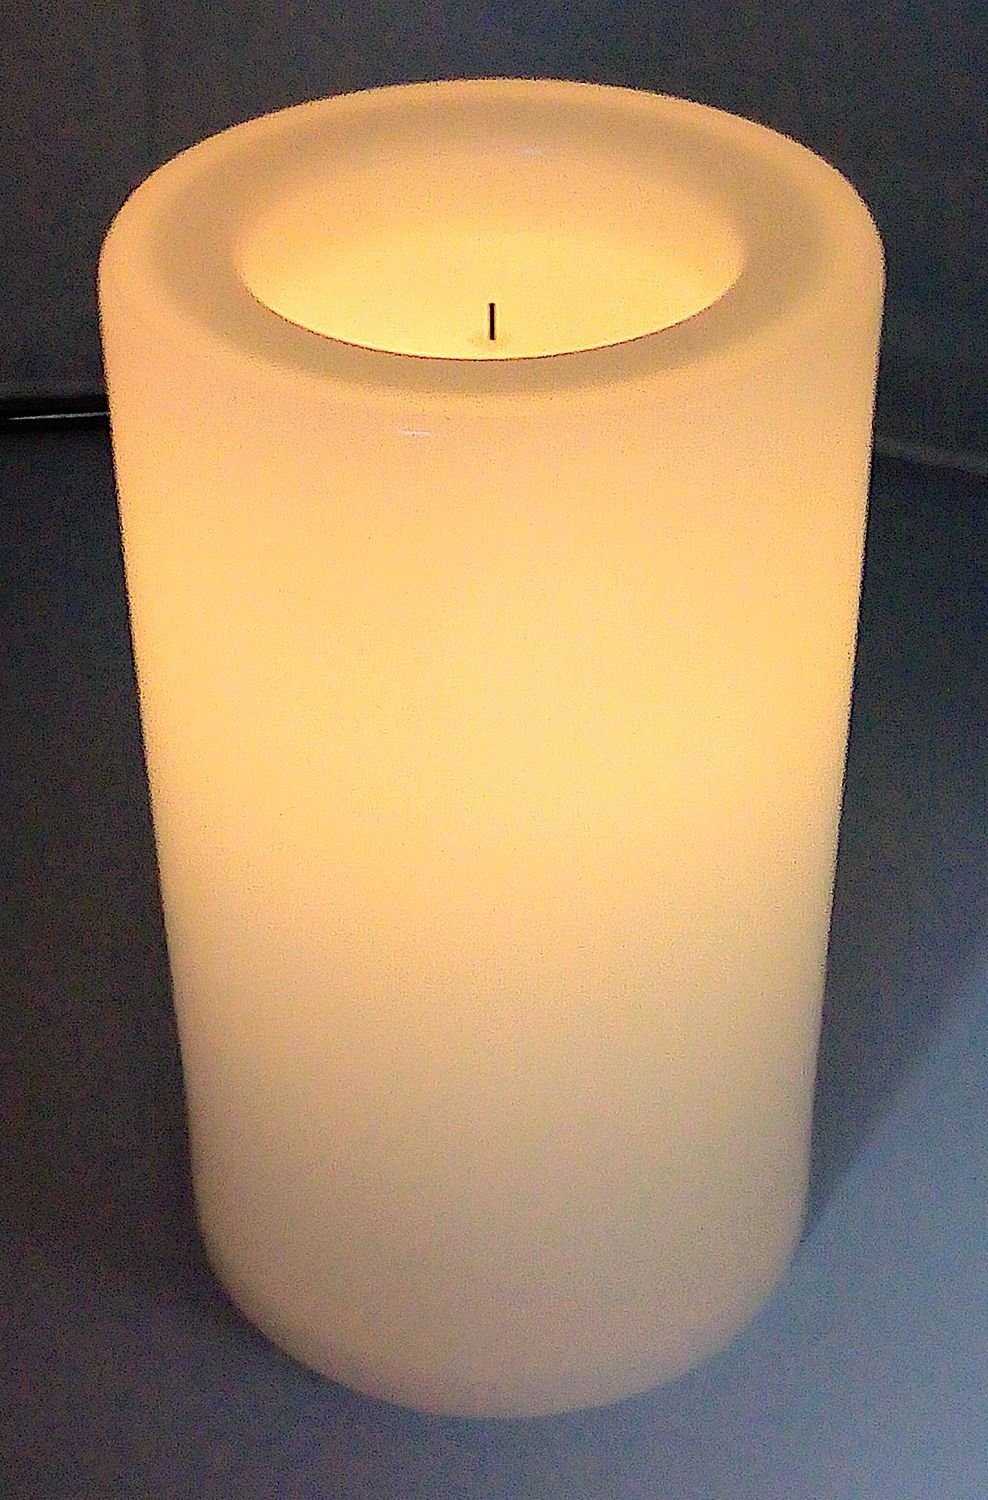 1a-Handelsagentur LED Dekolicht LED Outdoor-Kerze 16x20cm warmweiß mit  Flackerlicht Weihnachtskerze Tischdeko